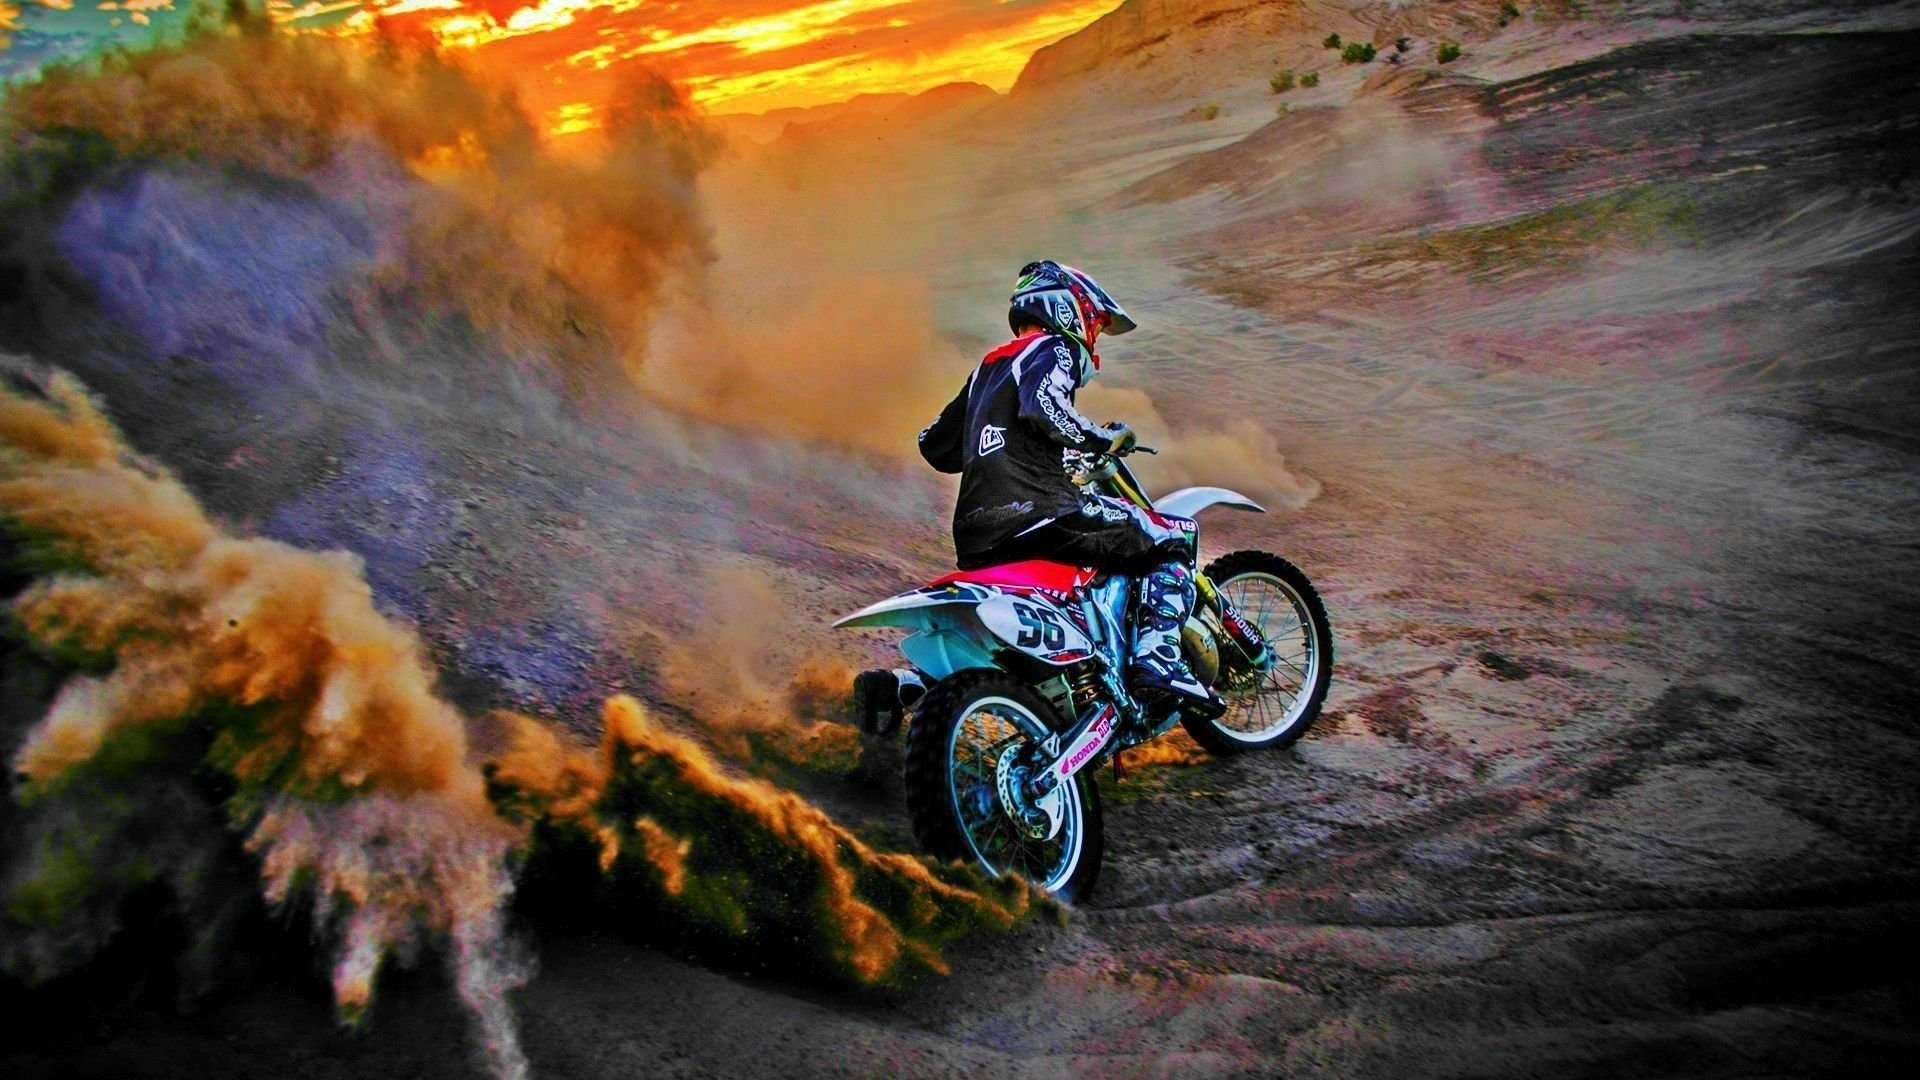 Motocross Dirt Bike Background